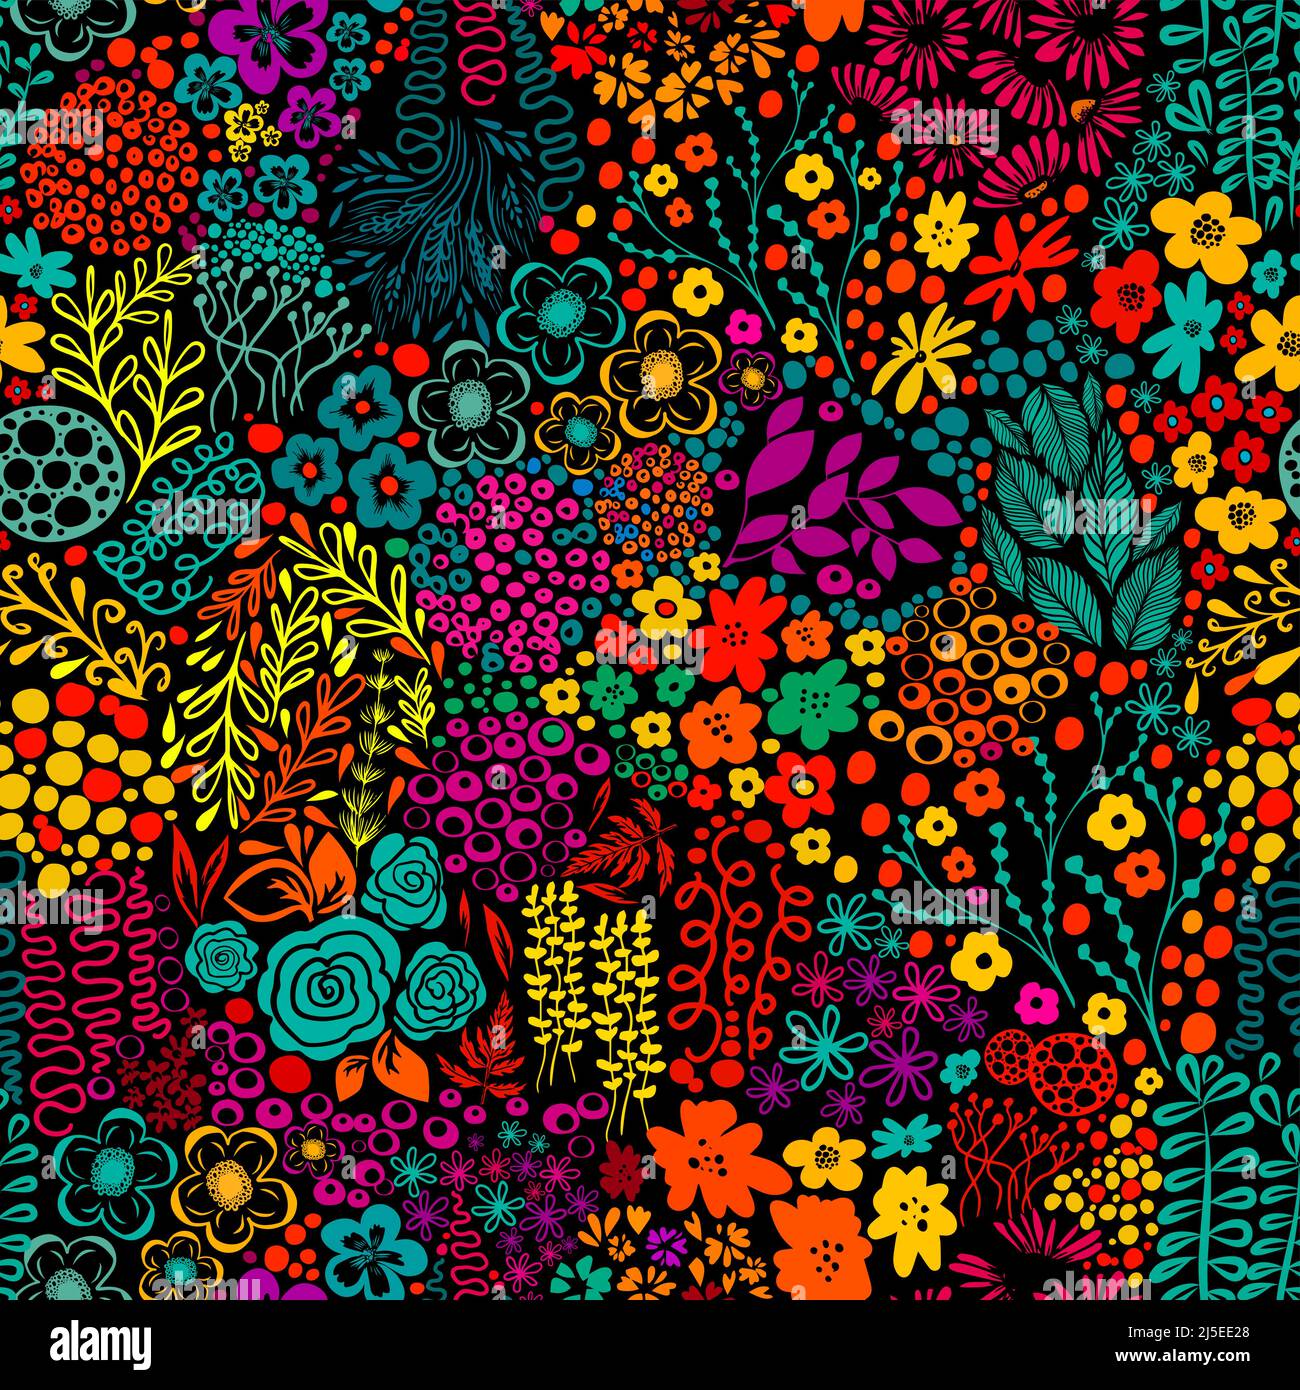 Exotische Phasane mit Blumen bunt nahtlose Muster auf schwarzem Hintergrund Vektor-Illustration Stock Vektor